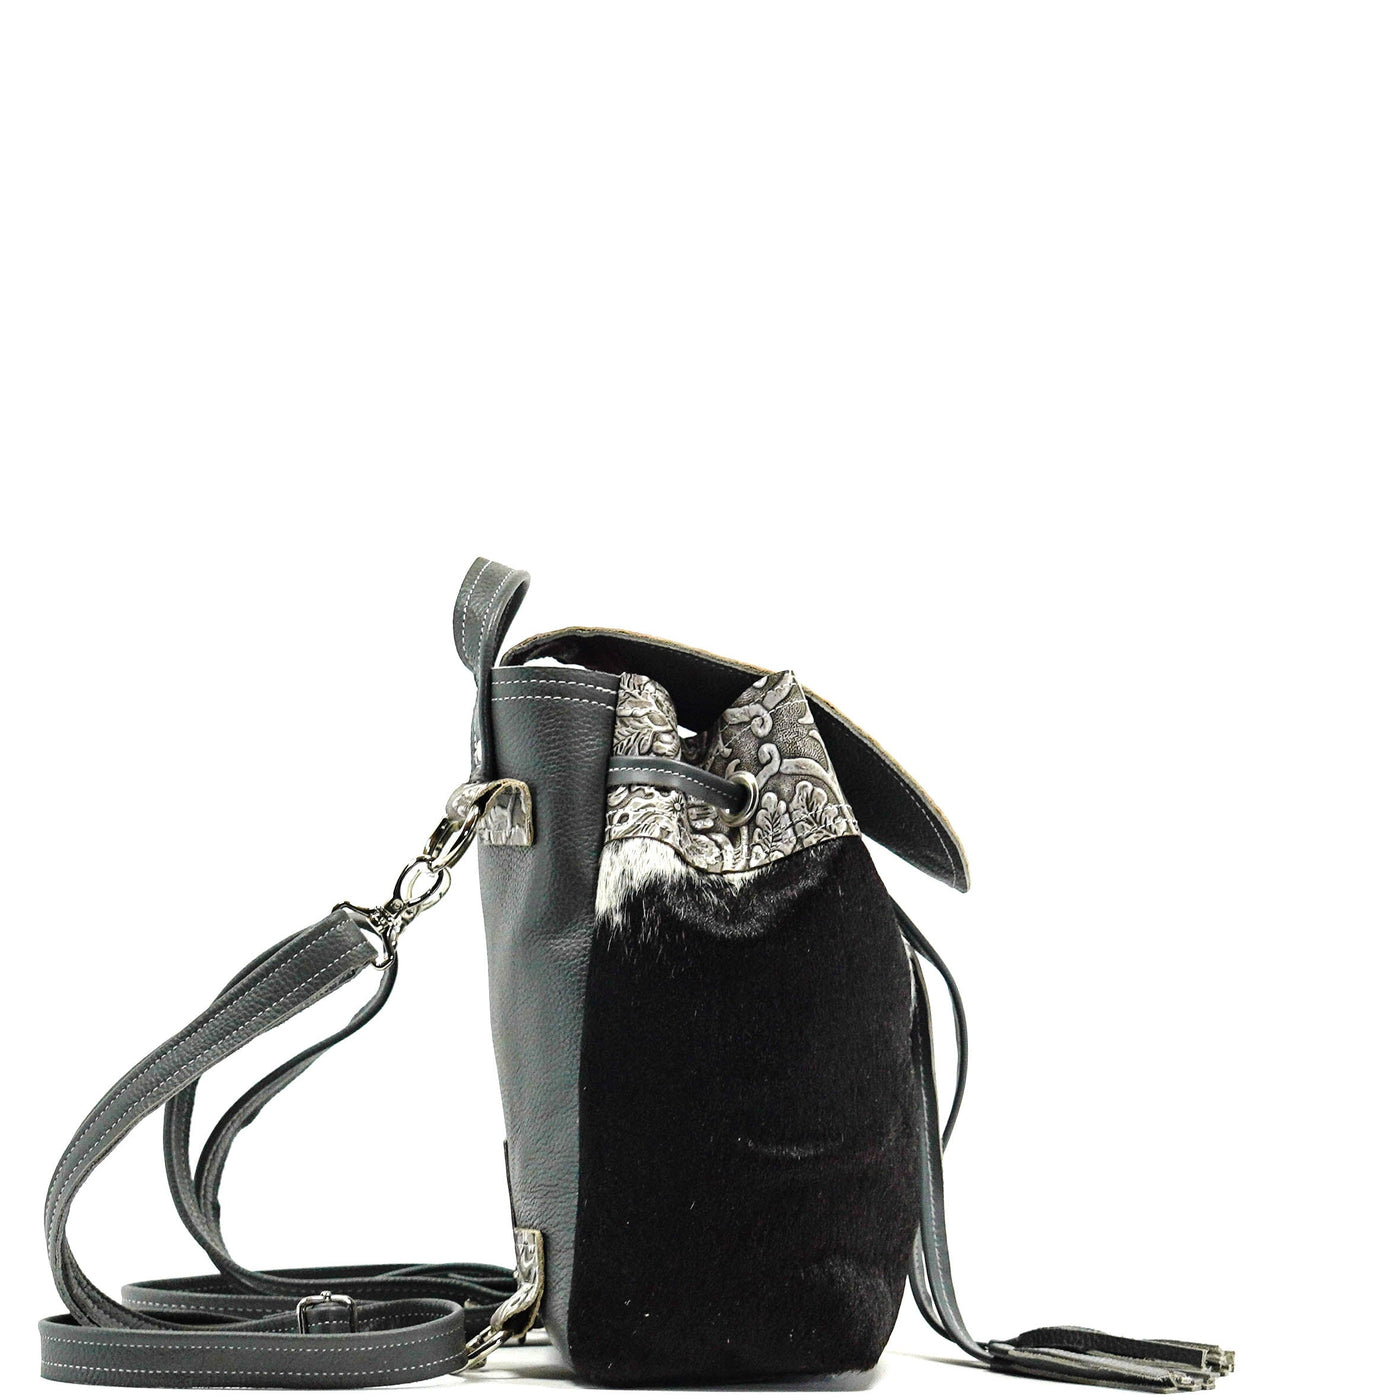 Mini Kelsea Backpack - Black & White w/ Silver Tool-Mini Kelsea Backpack-Western-Cowhide-Bags-Handmade-Products-Gifts-Dancing Cactus Designs